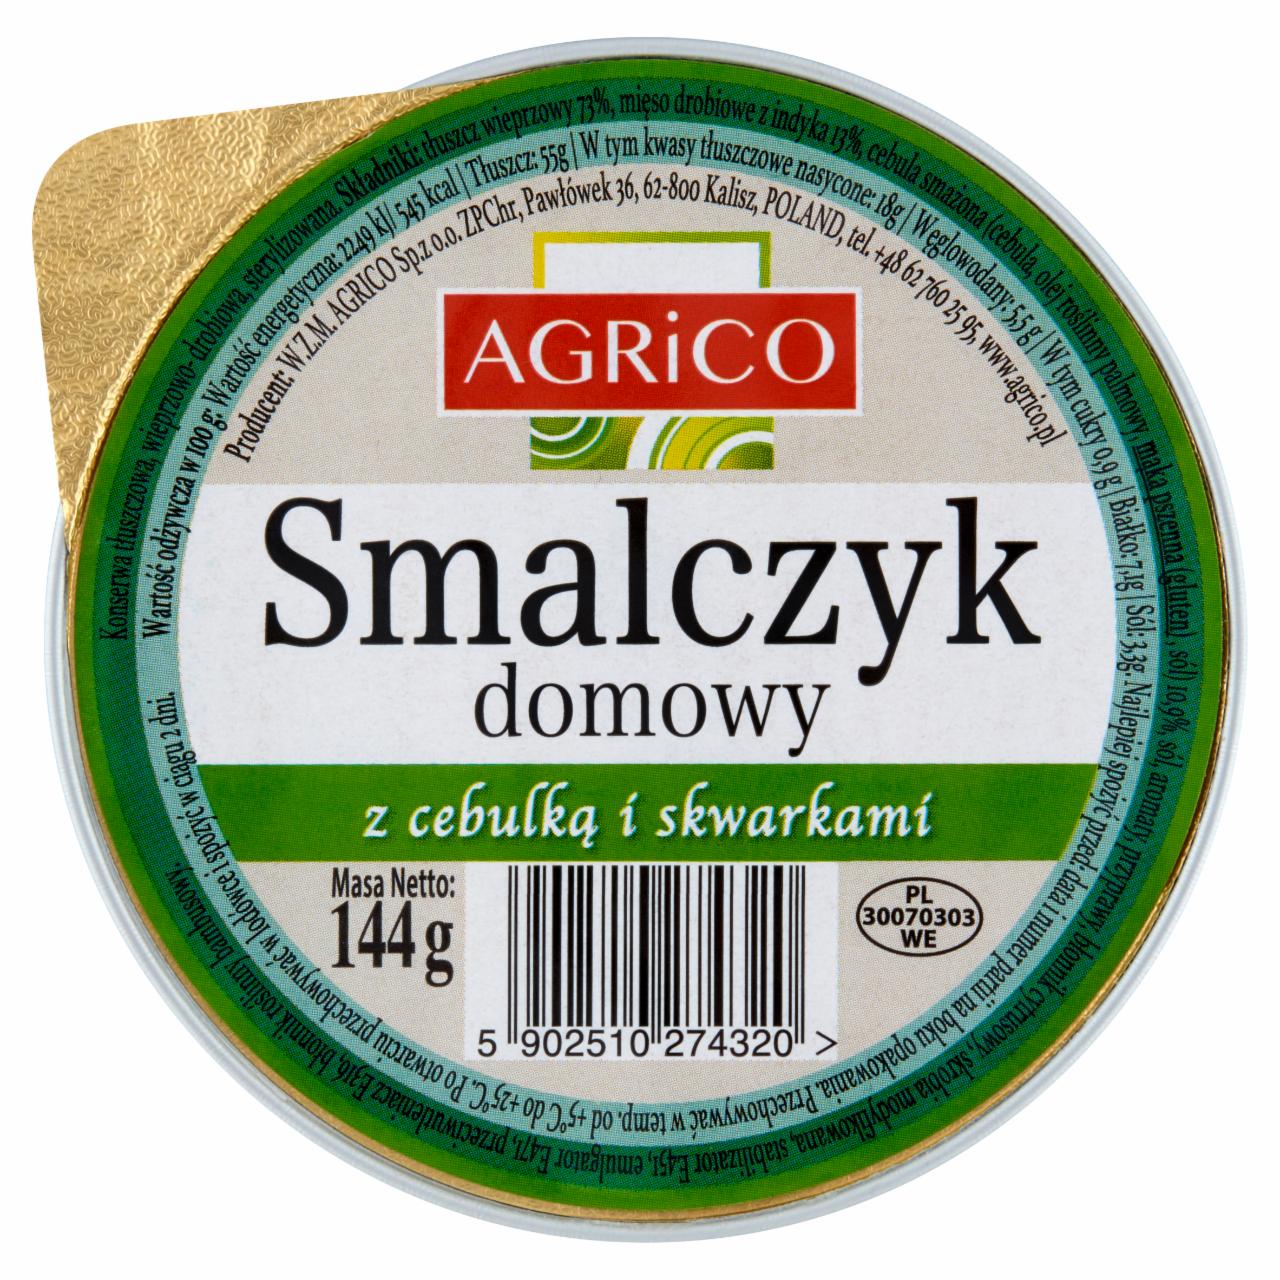 Zdjęcia - Agrico Smalczyk domowy z cebulką i skwarkami 144 g